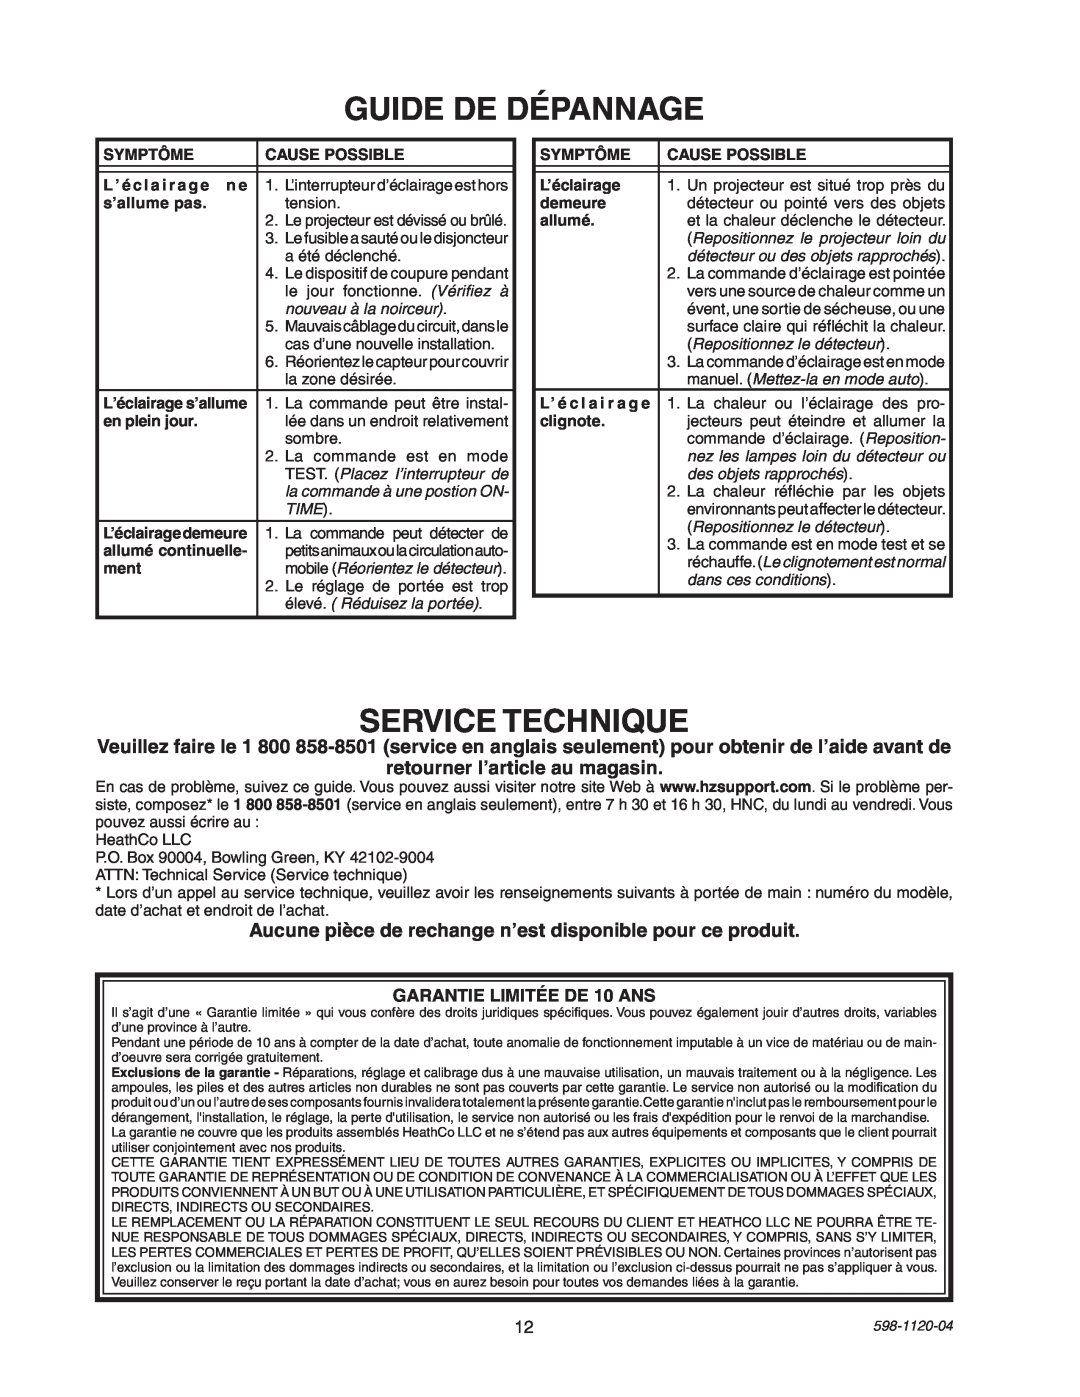 Heath Zenith SL-5710 manual Guide De Dépannage, Service Technique 